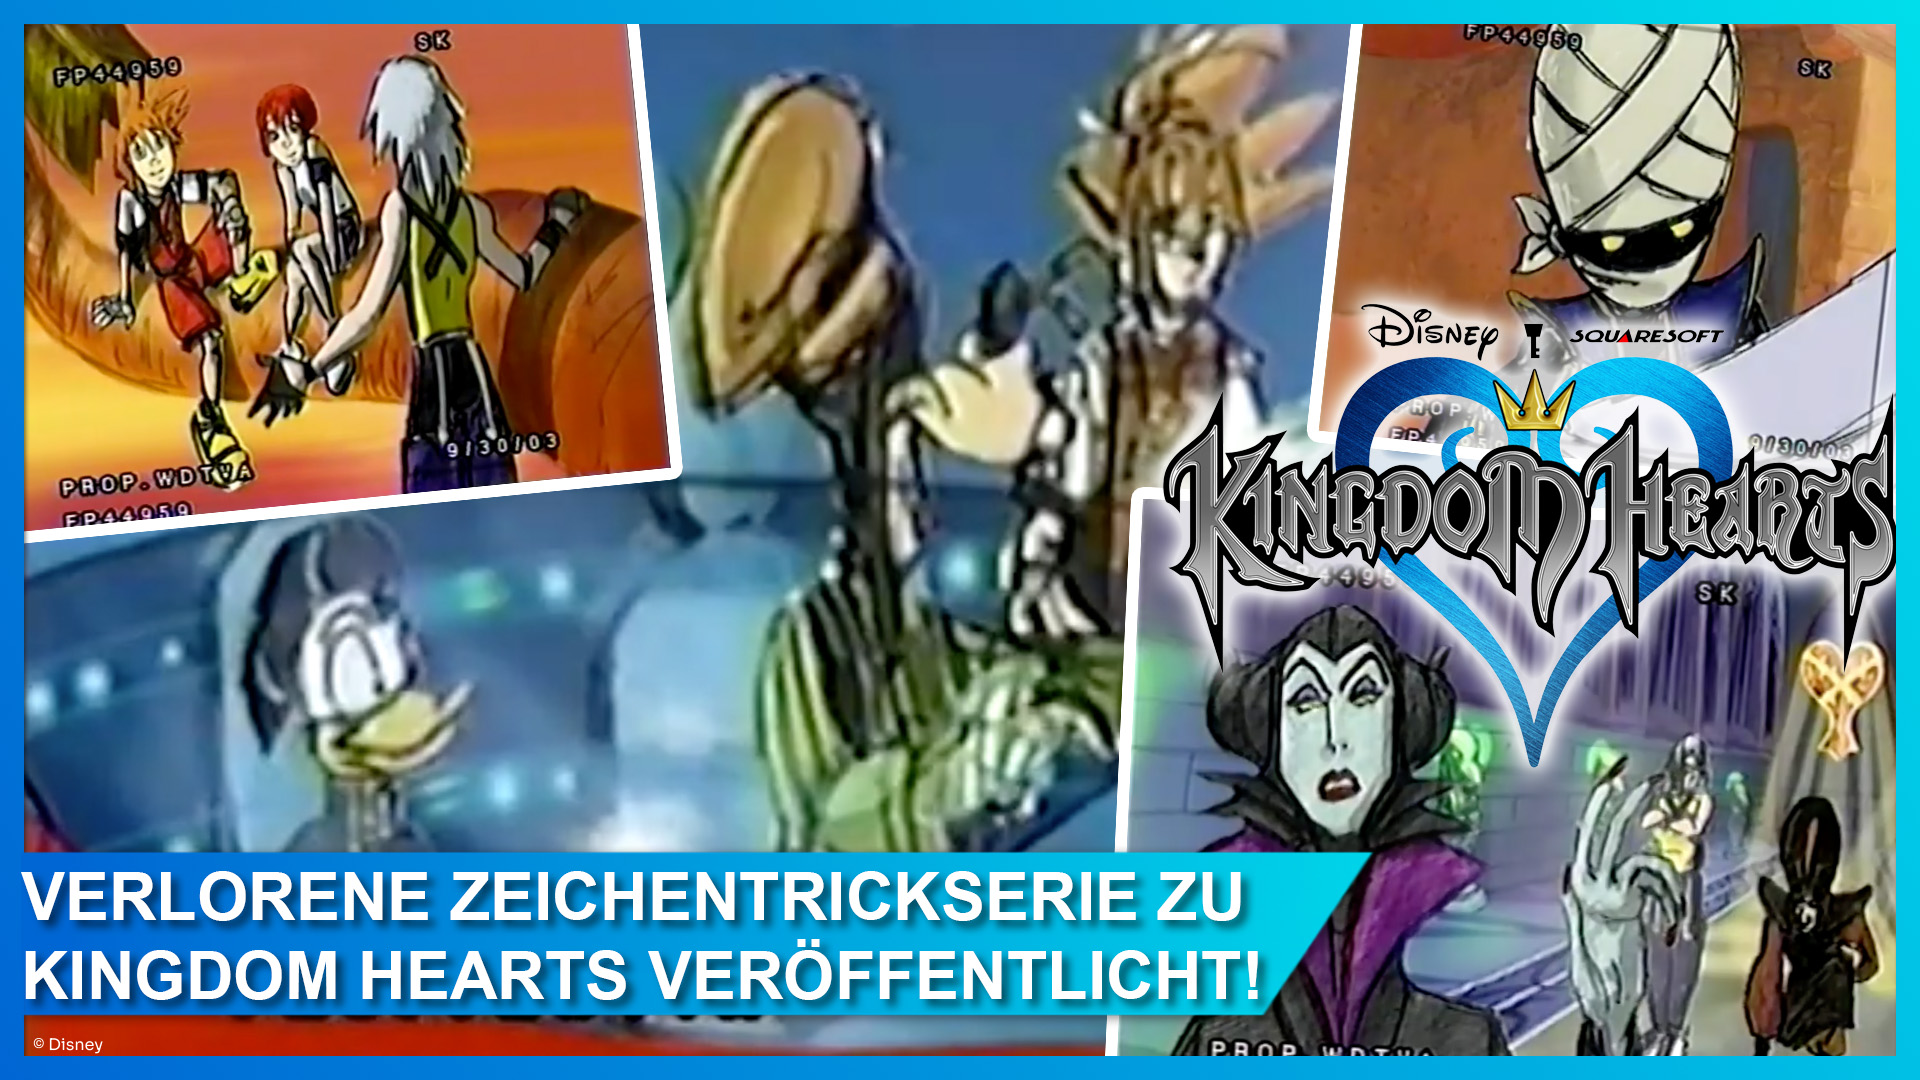 Disney Kingdom Hearts Animationsserie Pilot-Episode von 2003 bei YouTube veröffentlicht